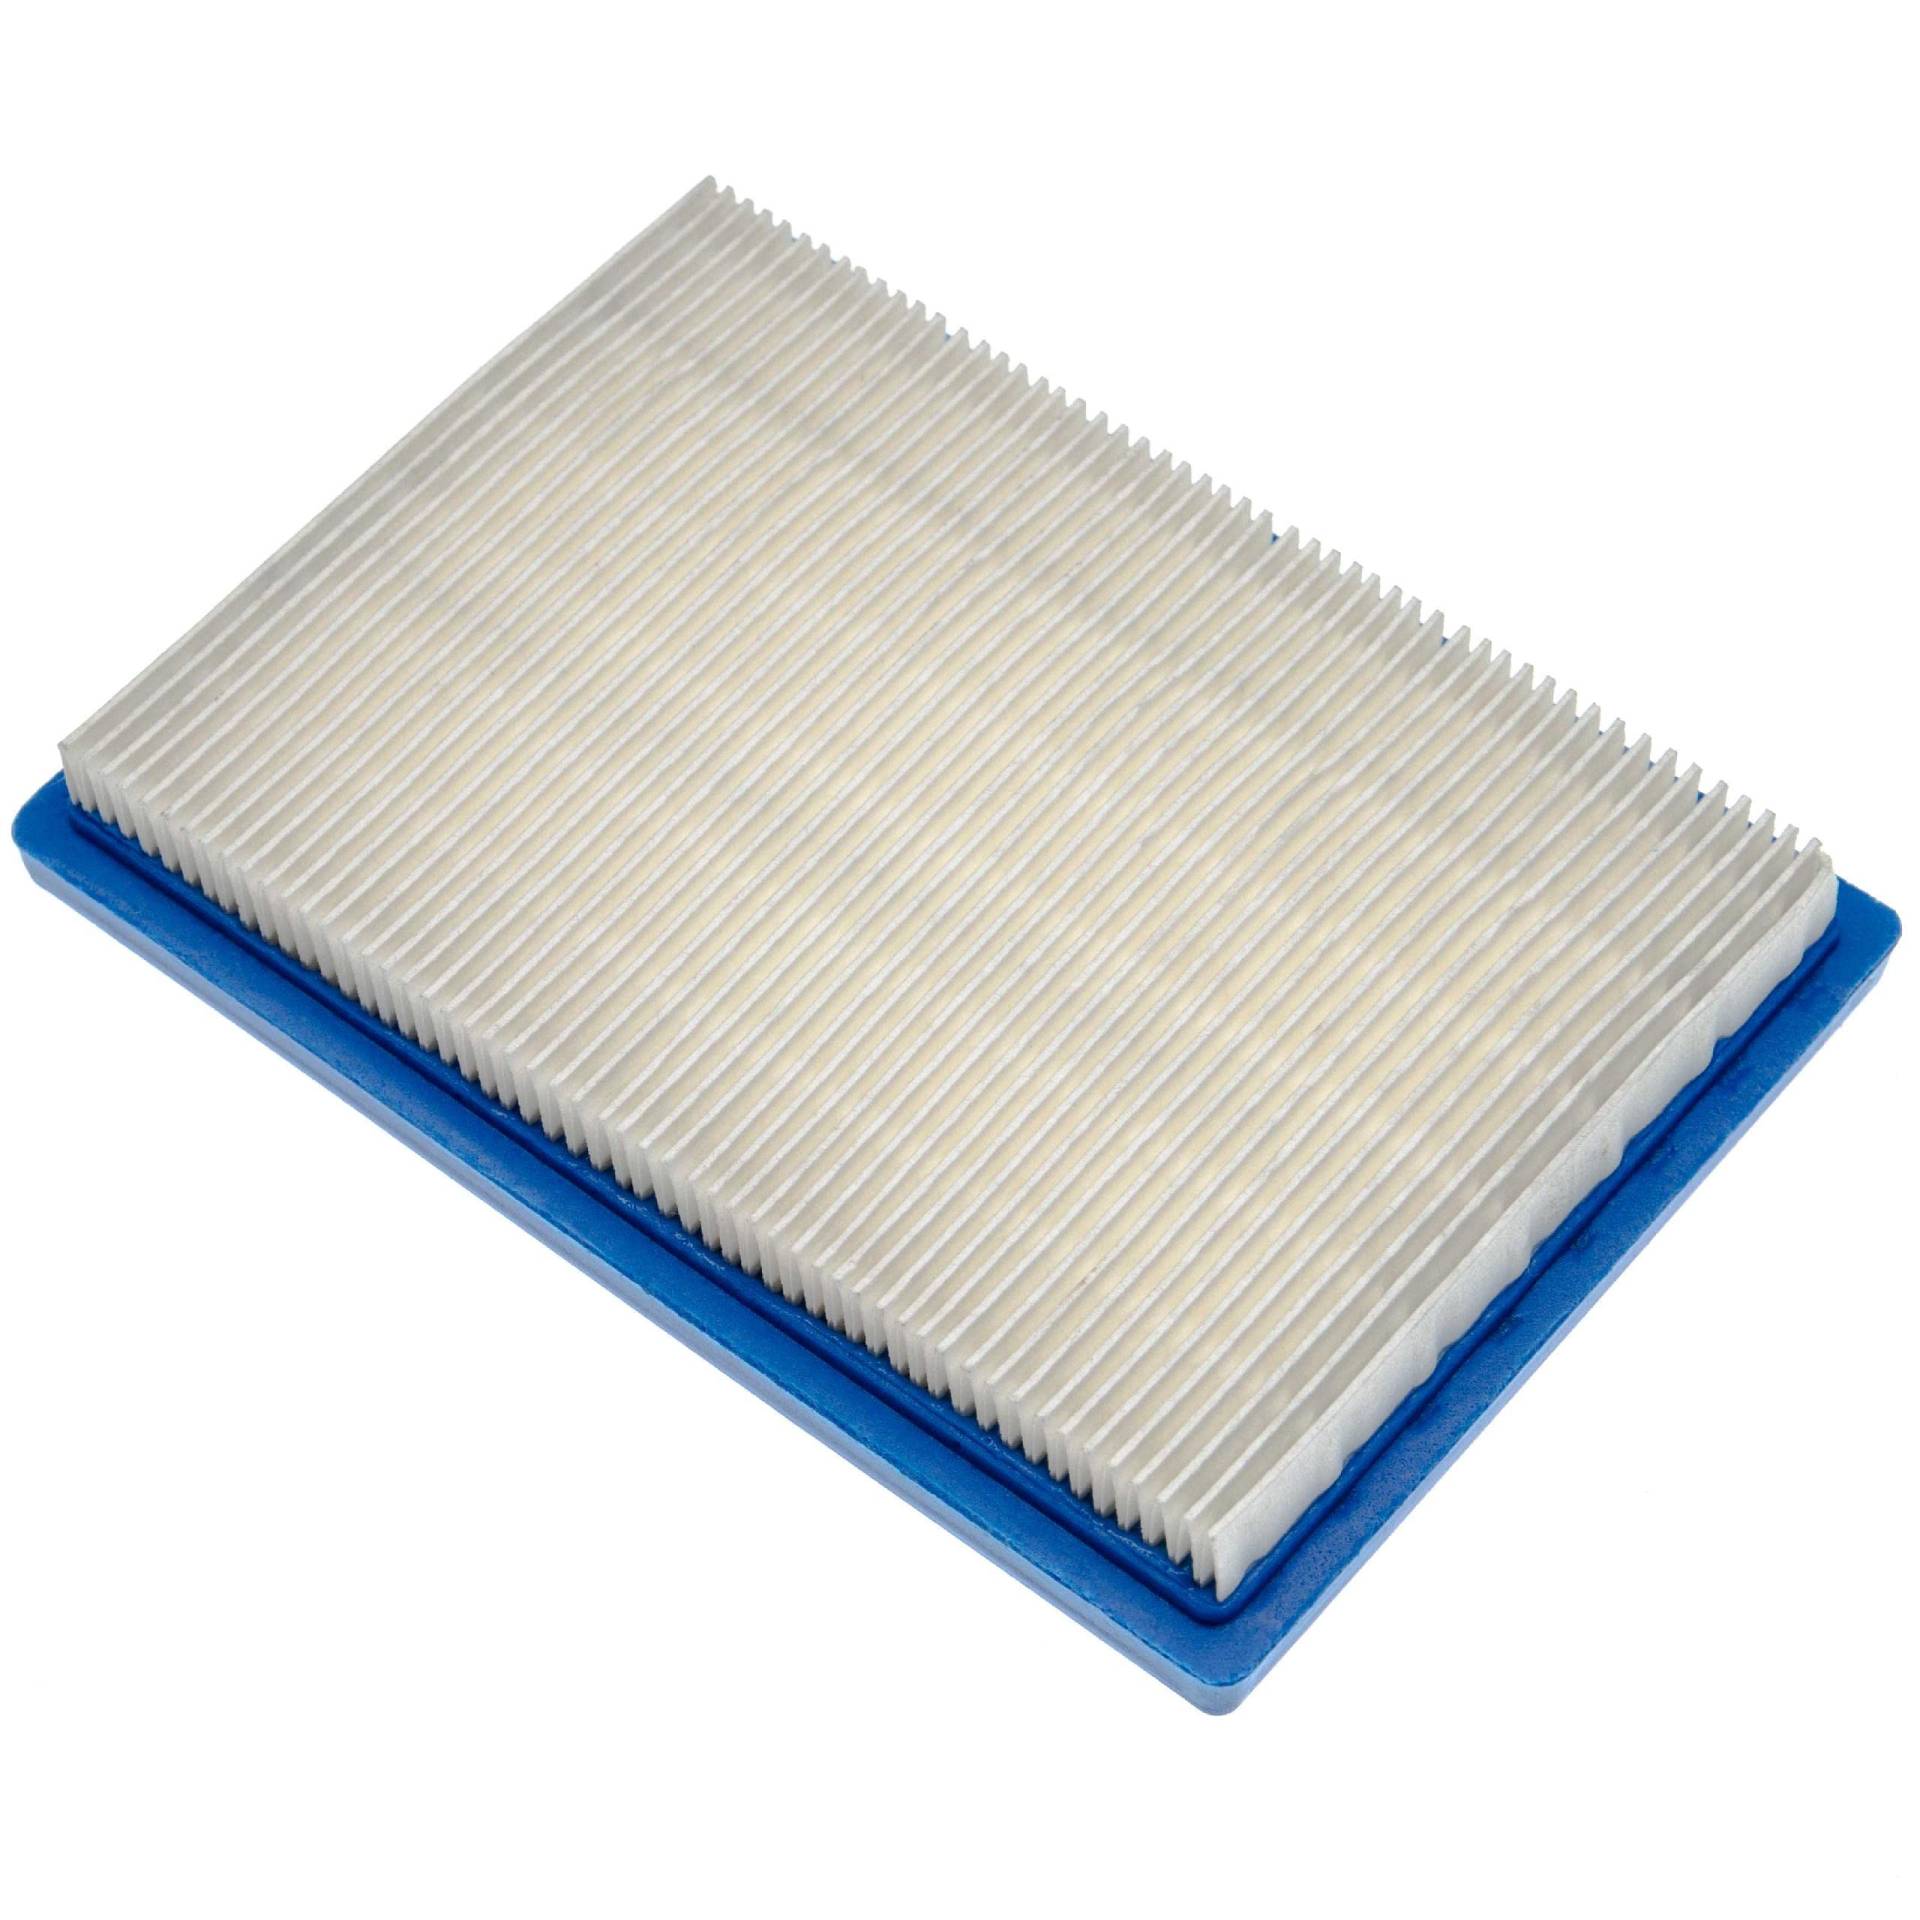 vhbw Ersatzfilter (1x Luftfilter) Ersatz für Ering B 397795 für Rasenmäher, 16 x 11,3 x 2,1 cm, Blau, Weiß von vhbw